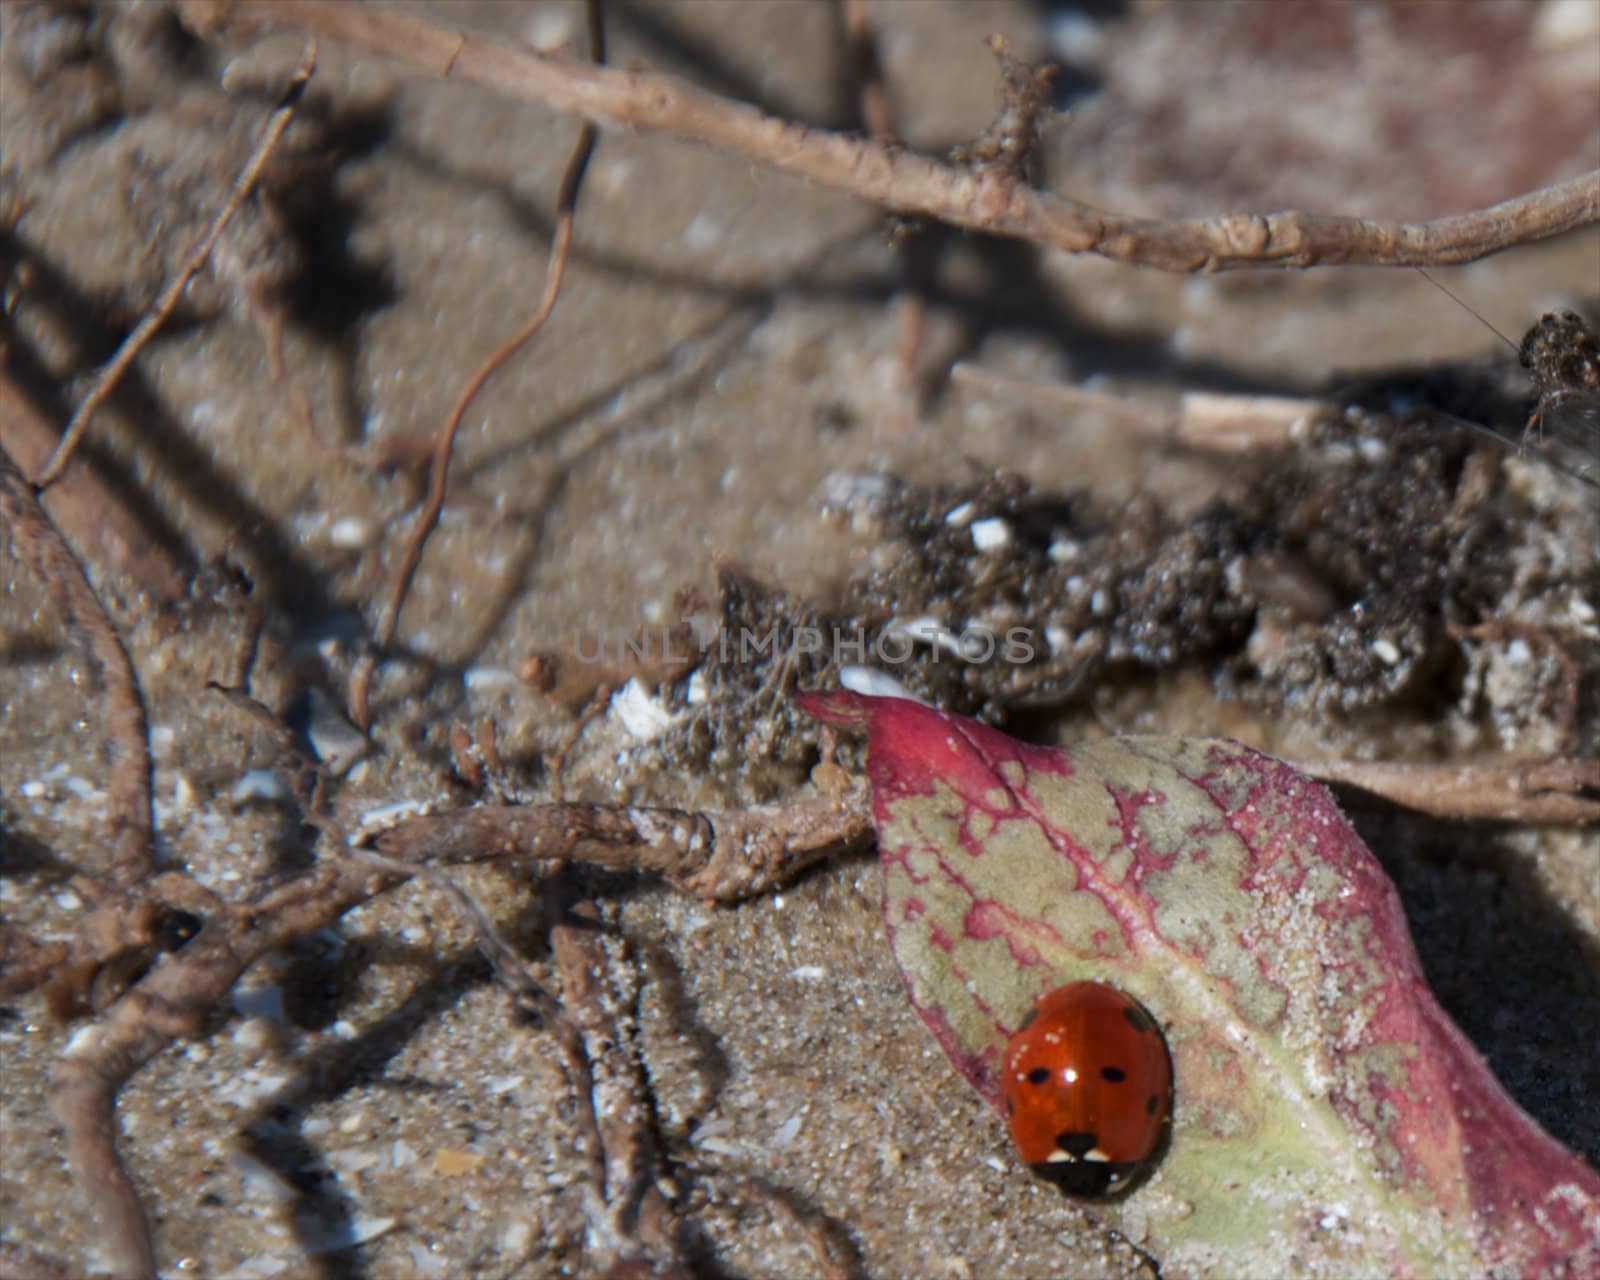 Ladybug on mottled leaf by tyroneburkemedia@gmail.com